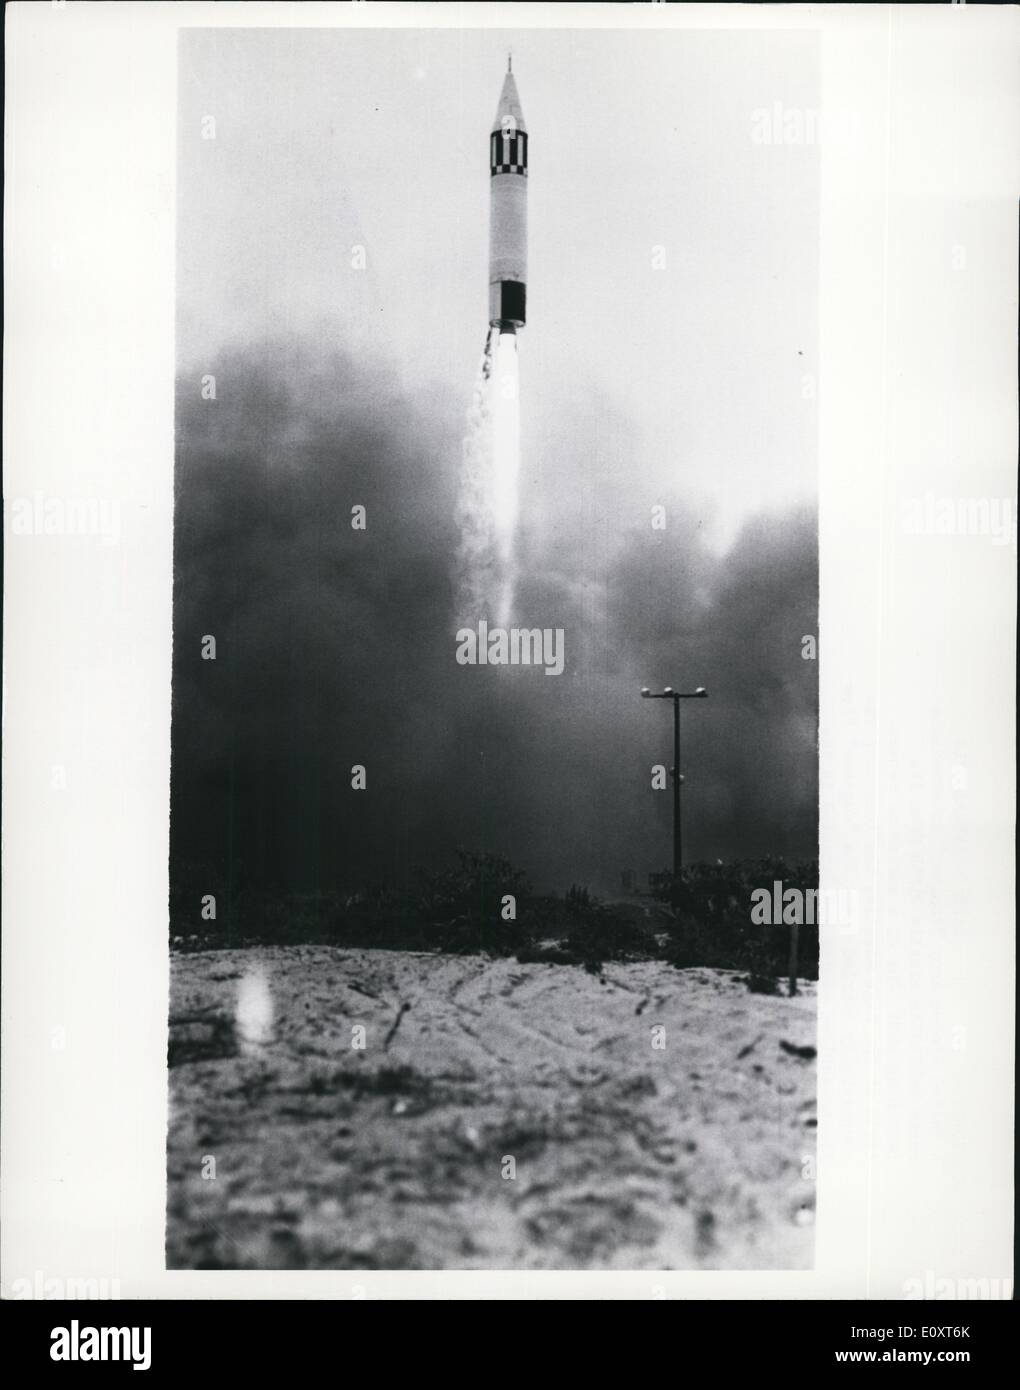 11 novembre 1967 - UN United State Army ''Jupiter'' intermediate range ballistic missile ascenseurs depuis son lancement. L'un d'une série de récents essais de l'énorme, le lancement de missiles a été menée avec succès. Le ''Jupiter'' a effectué son cours prescrits et touchés dans la cible sélectionnée avant le sont. Le ''Jupiter'' a été développé par des missiles balistiques de l'Armée de l'agence, Huntsville, Alabama, et est produit par la société Chrysler, Warrne, au Michigan. Banque D'Images